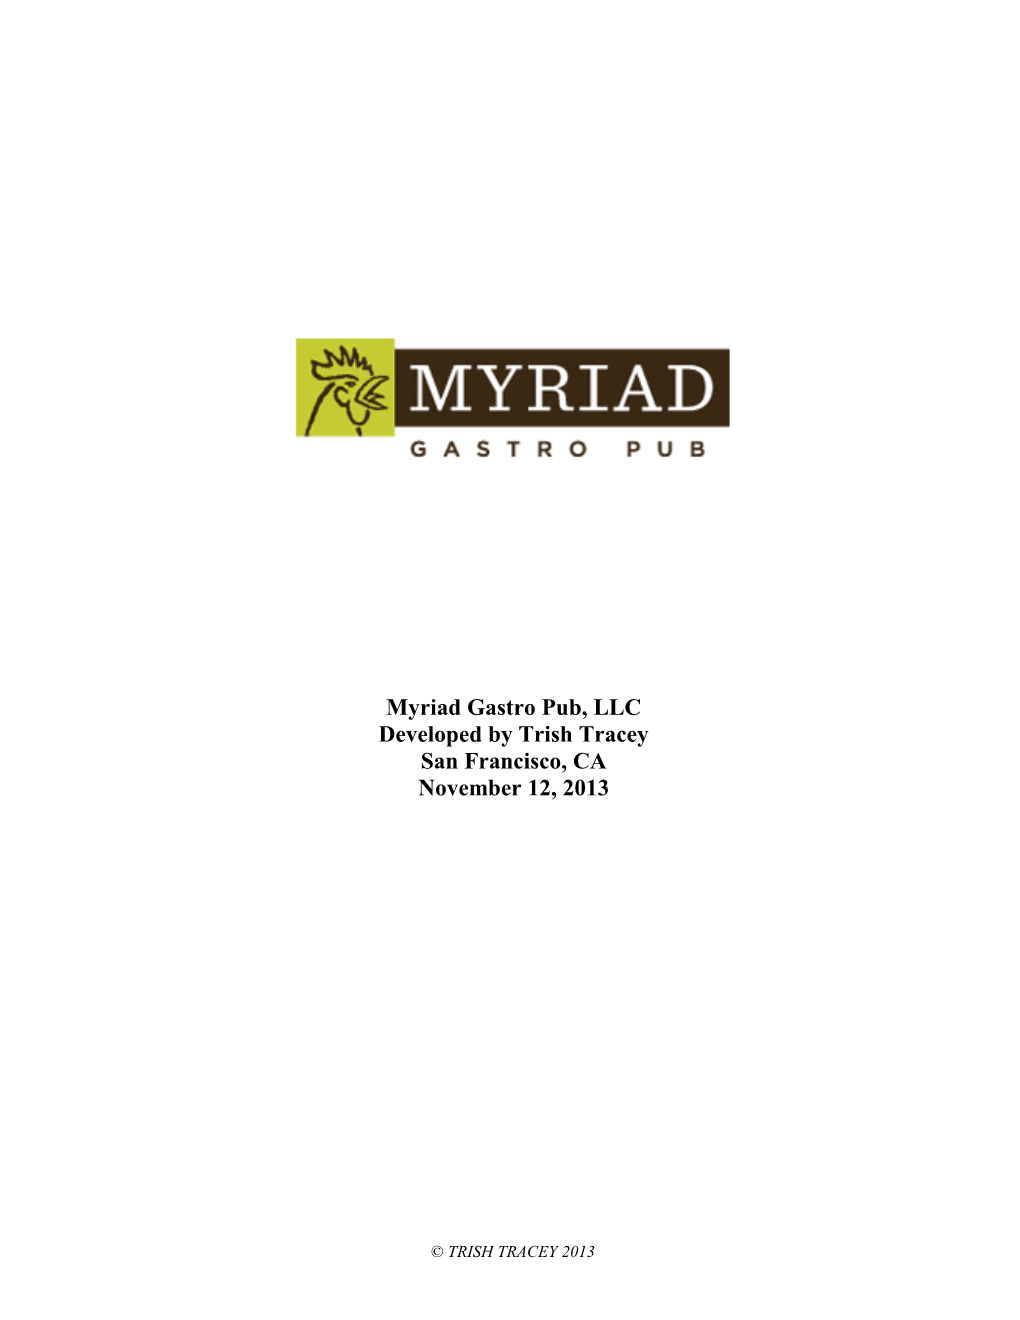 Myriad Gastro Pub, LLC